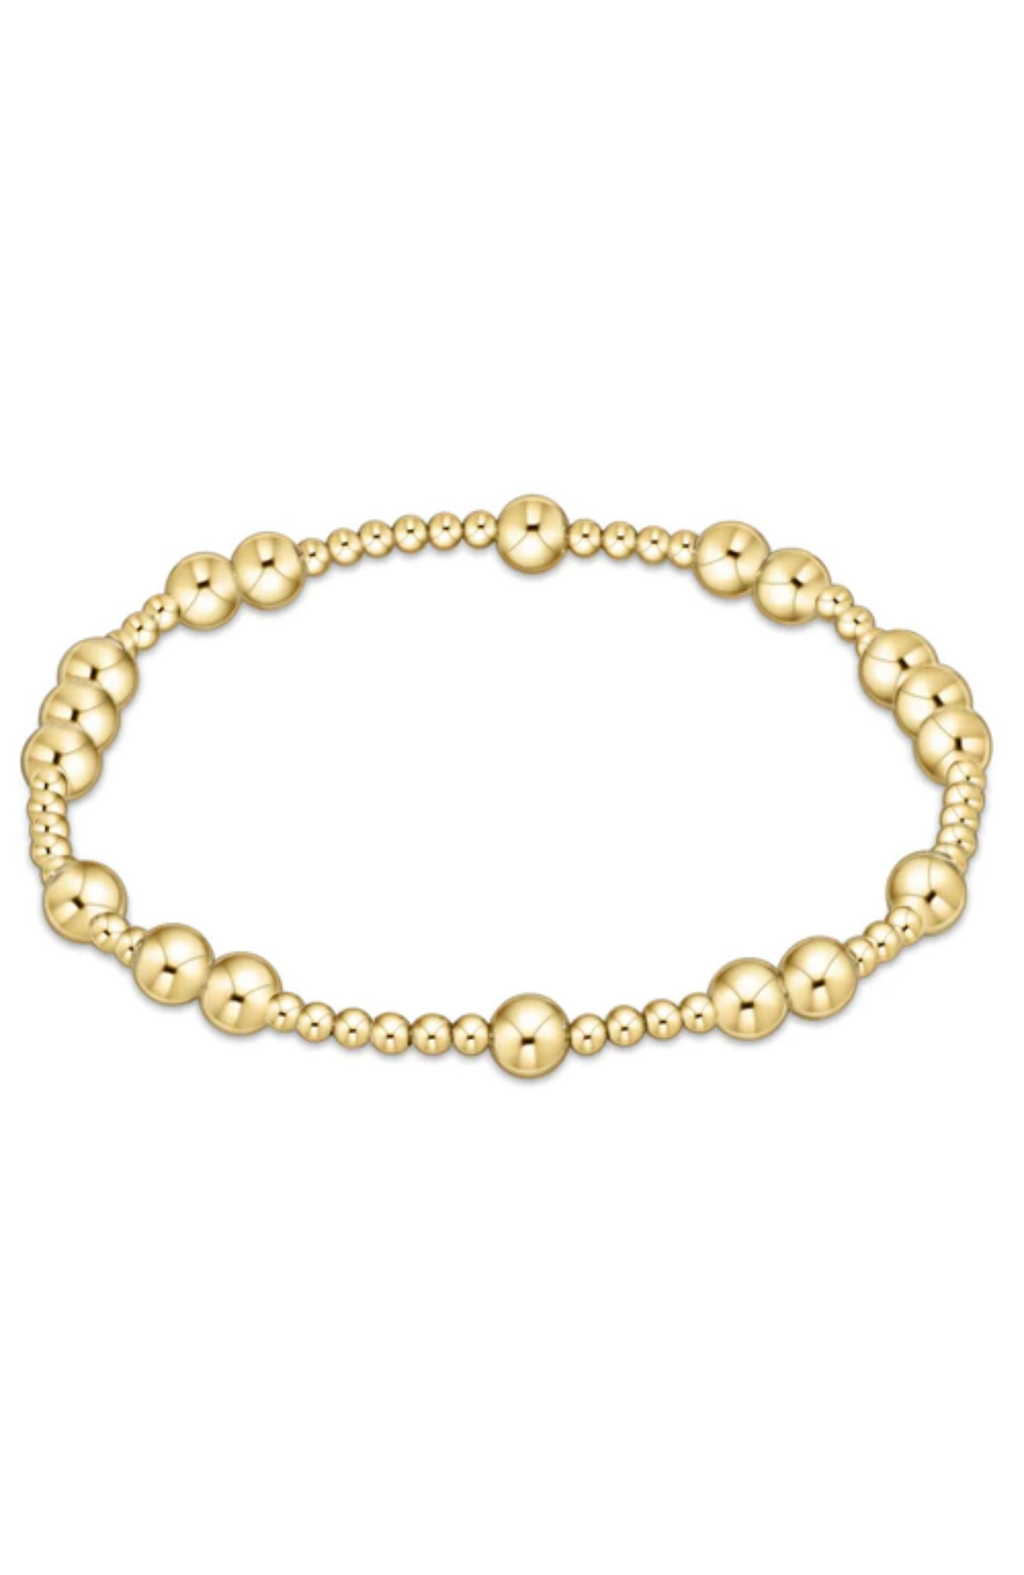 Enewton - Hope Unwritten 5mm Gold Bead Bracelet